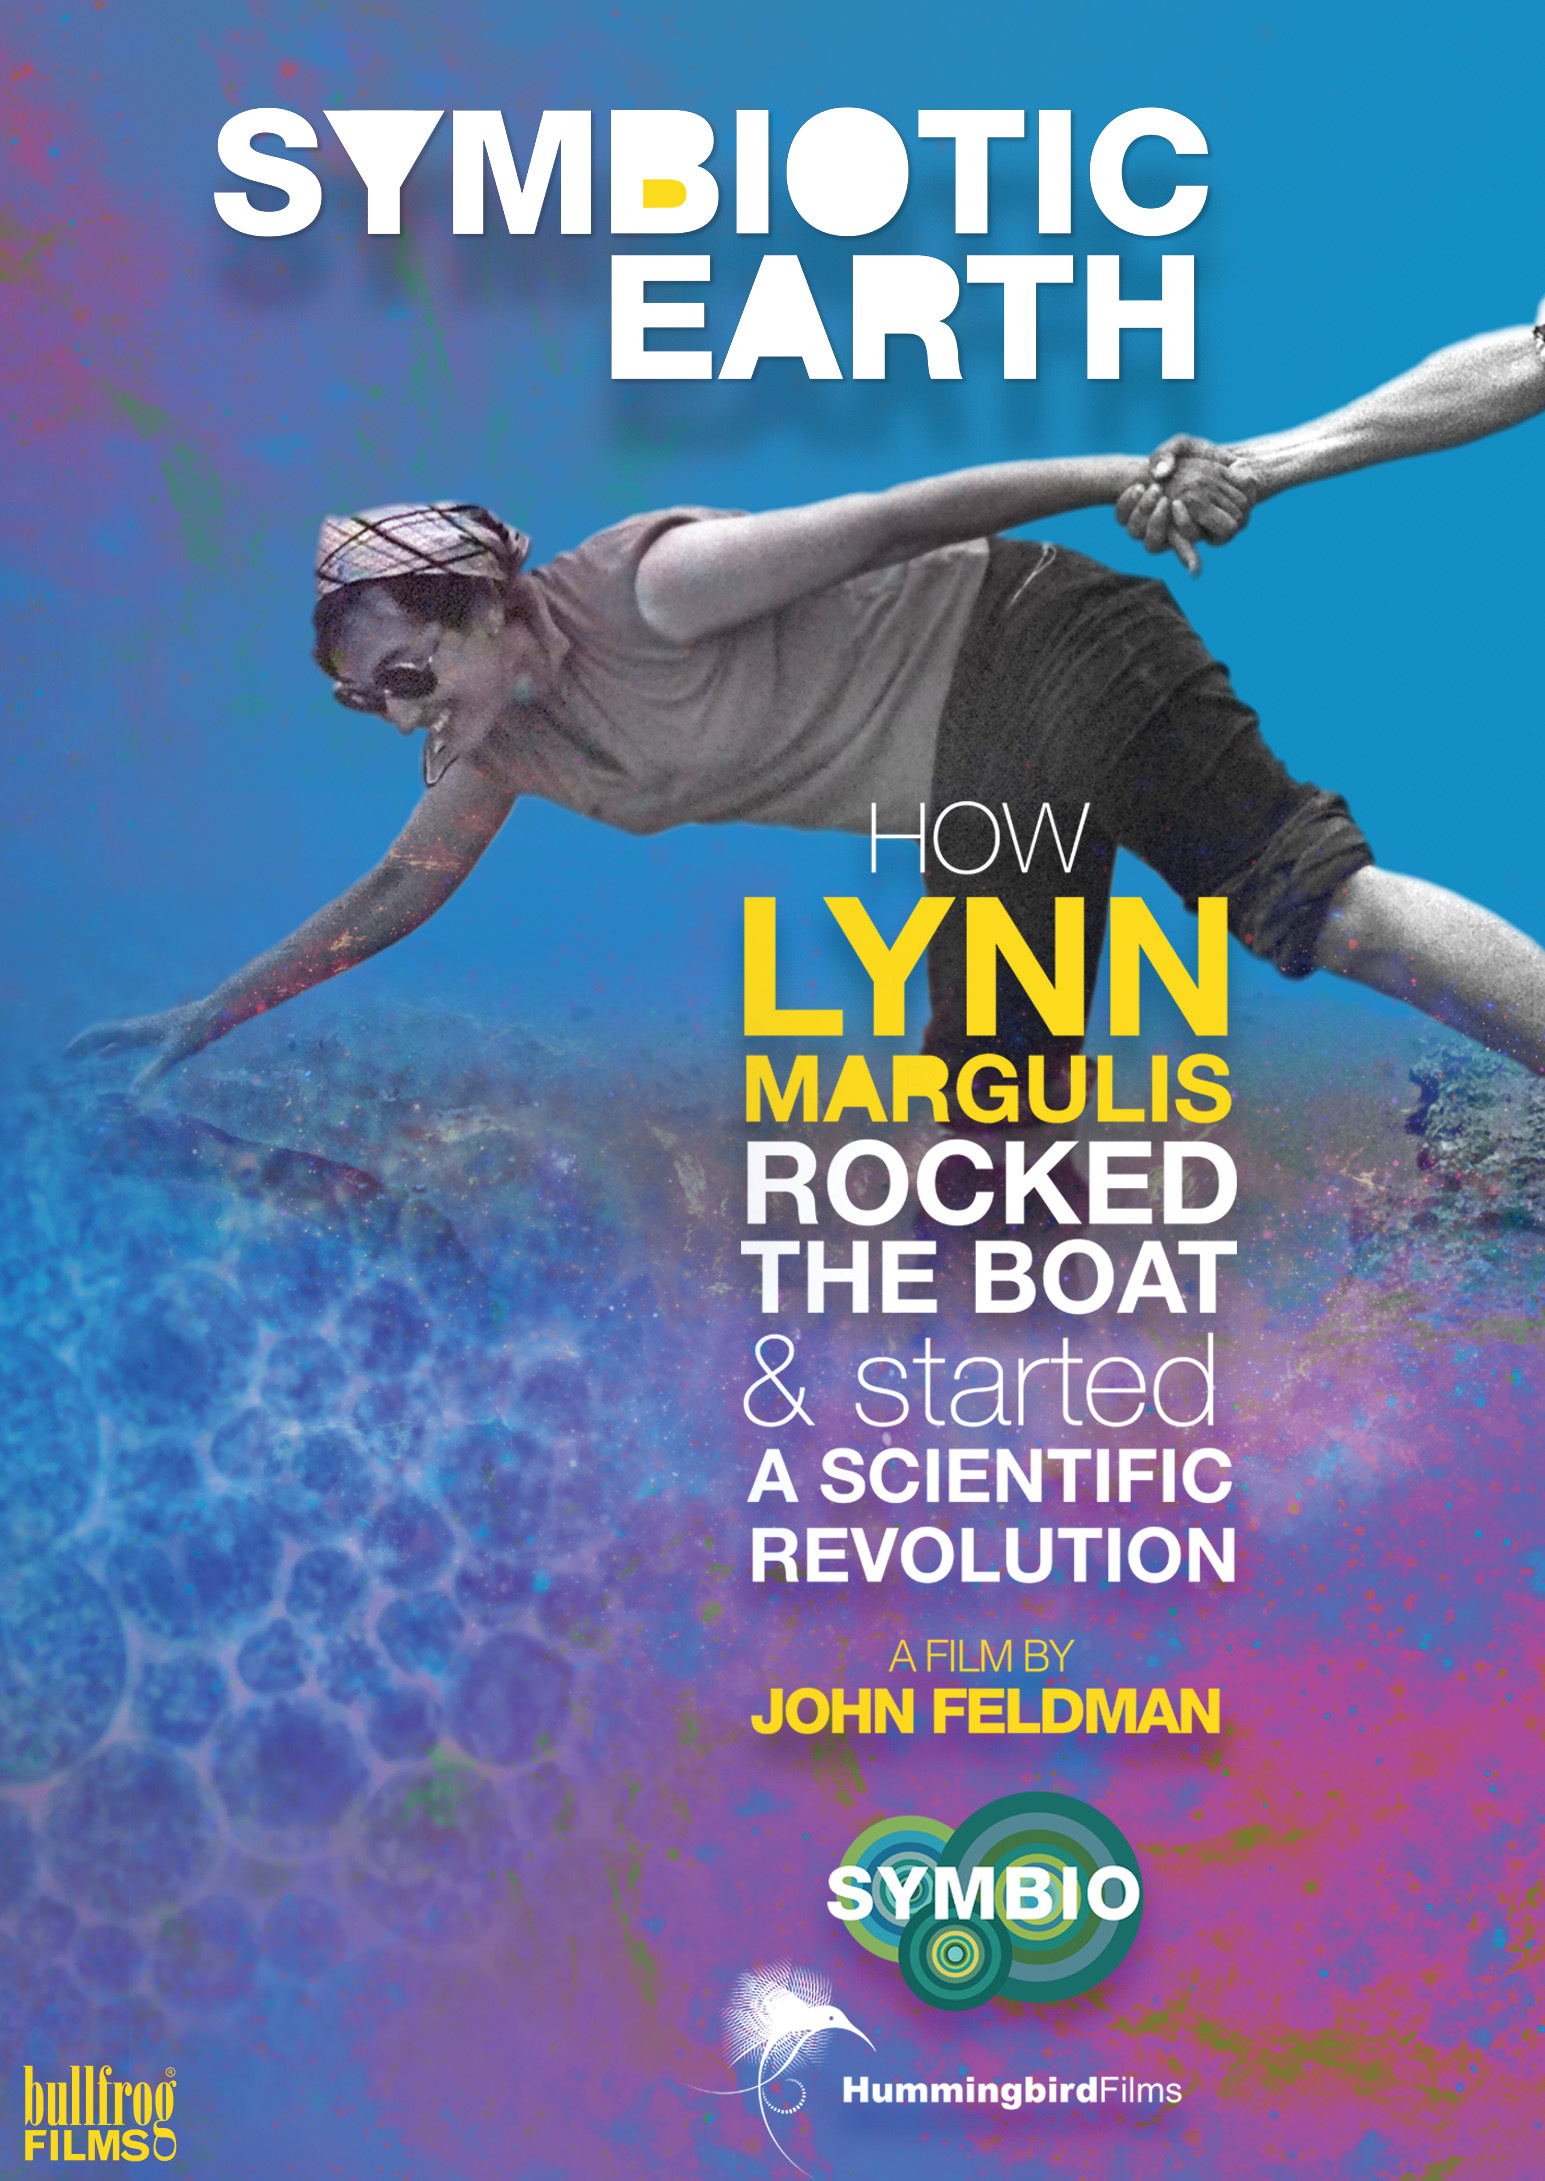 Das Filmplakat des Filmes Symbiotic Earth zeigt Lynn Margulis, wie sie mit einer Hand und einem Bein im Wasser ist, mit dem anderen Bein auf der Erde und mit der anderen Hand eine fremde Hand festhält.